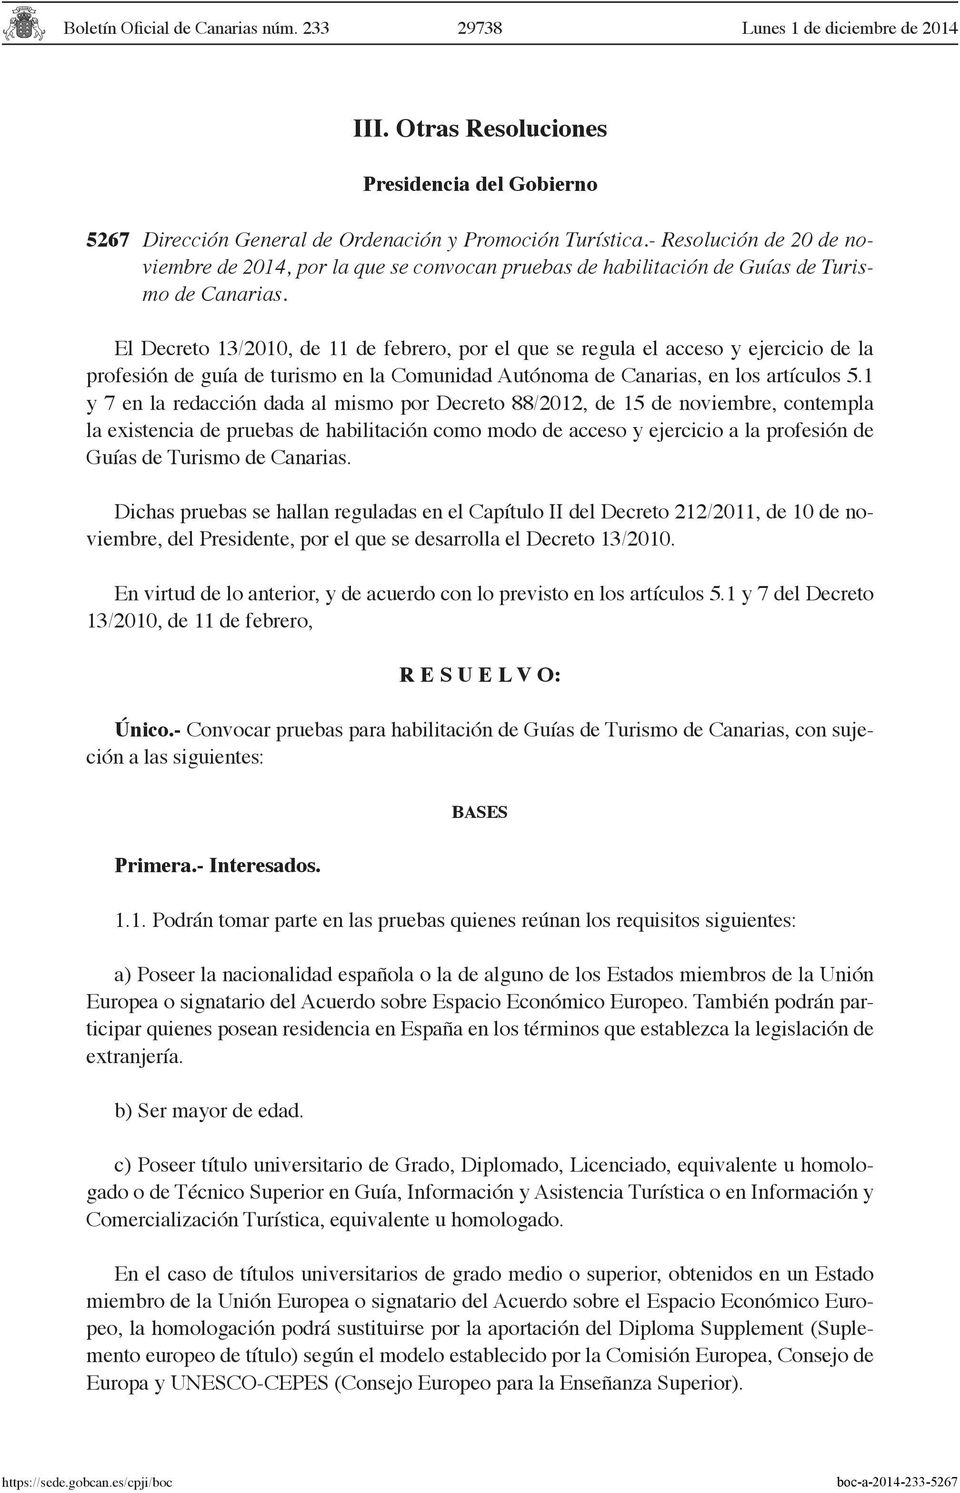 El Decreto 13/2010, de 11 de febrero, por el que se regula el acceso y ejercicio de la profesión de guía de turismo en la Comunidad Autónoma de Canarias, en los artículos 5.